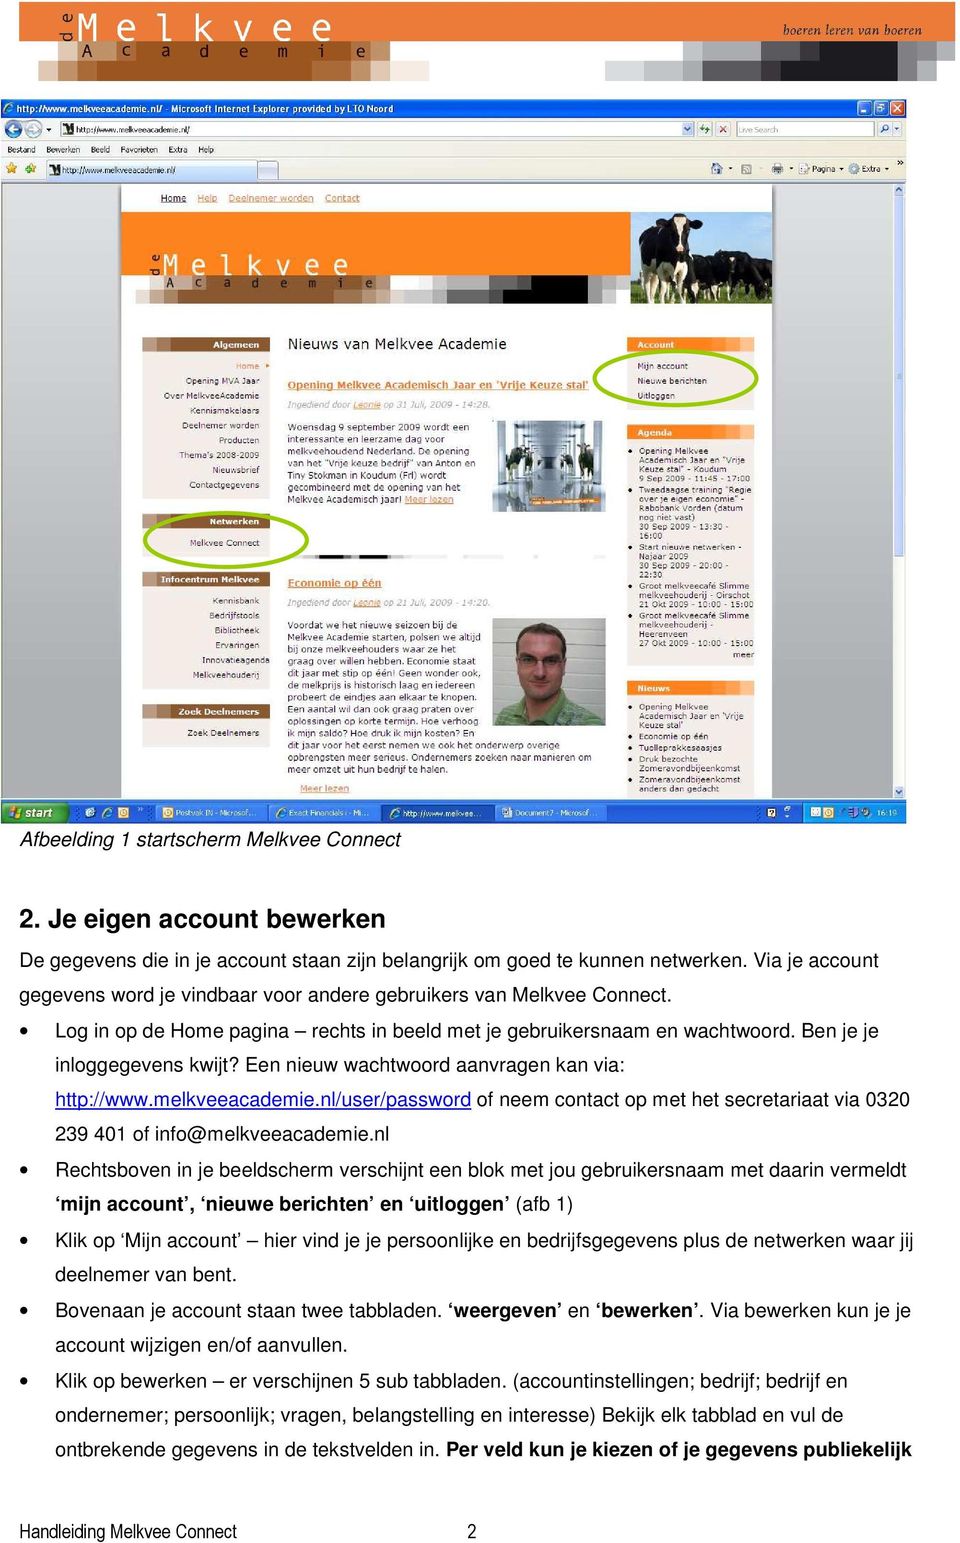 Een nieuw wachtwoord aanvragen kan via: http://www.melkveeacademie.nl/user/password of neem contact op met het secretariaat via 0320 239 401 of info@melkveeacademie.